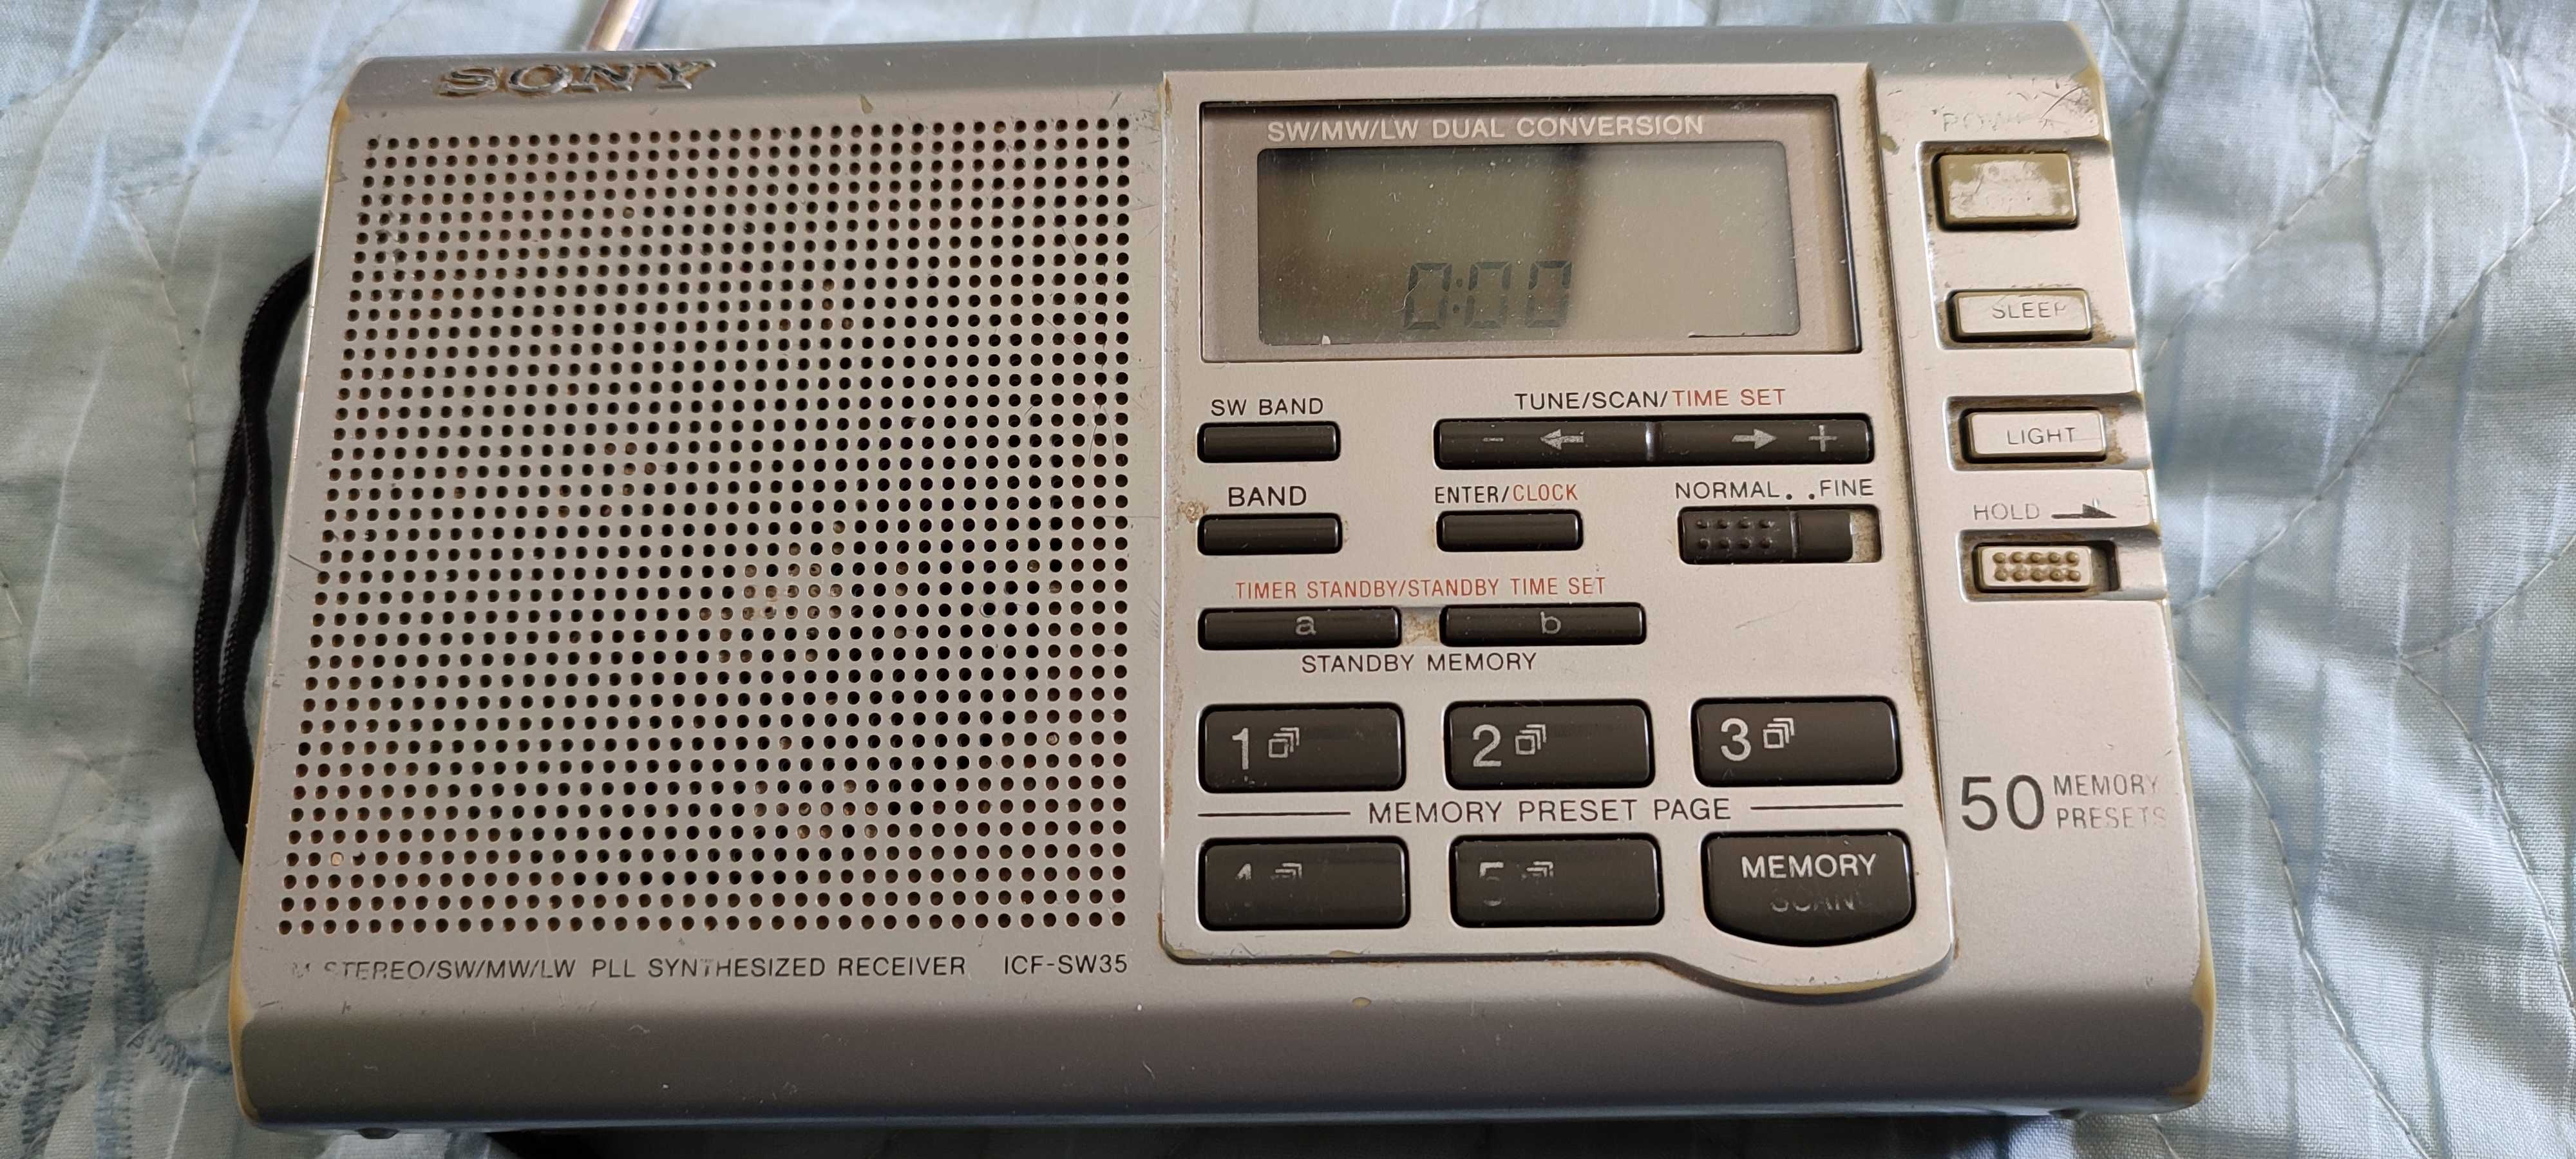 Radio terapie Sound Oasis S3000 si SONY ICF-SW35